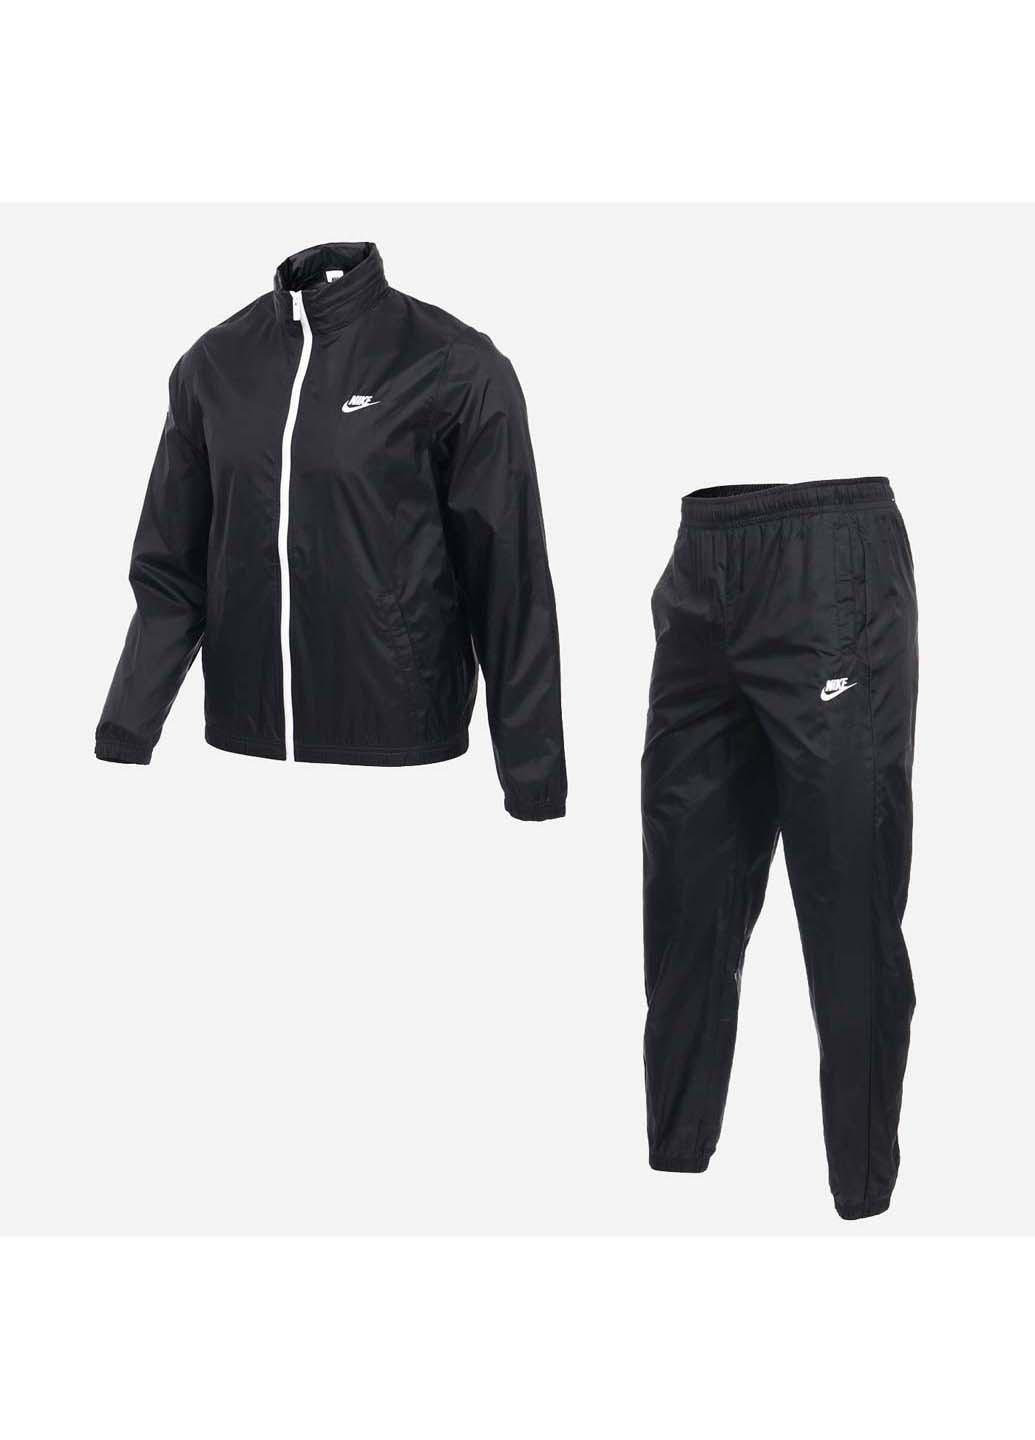 Чорний демісезонний спортивний костюм чоловічий m nk club lnd wvn trk suit Nike